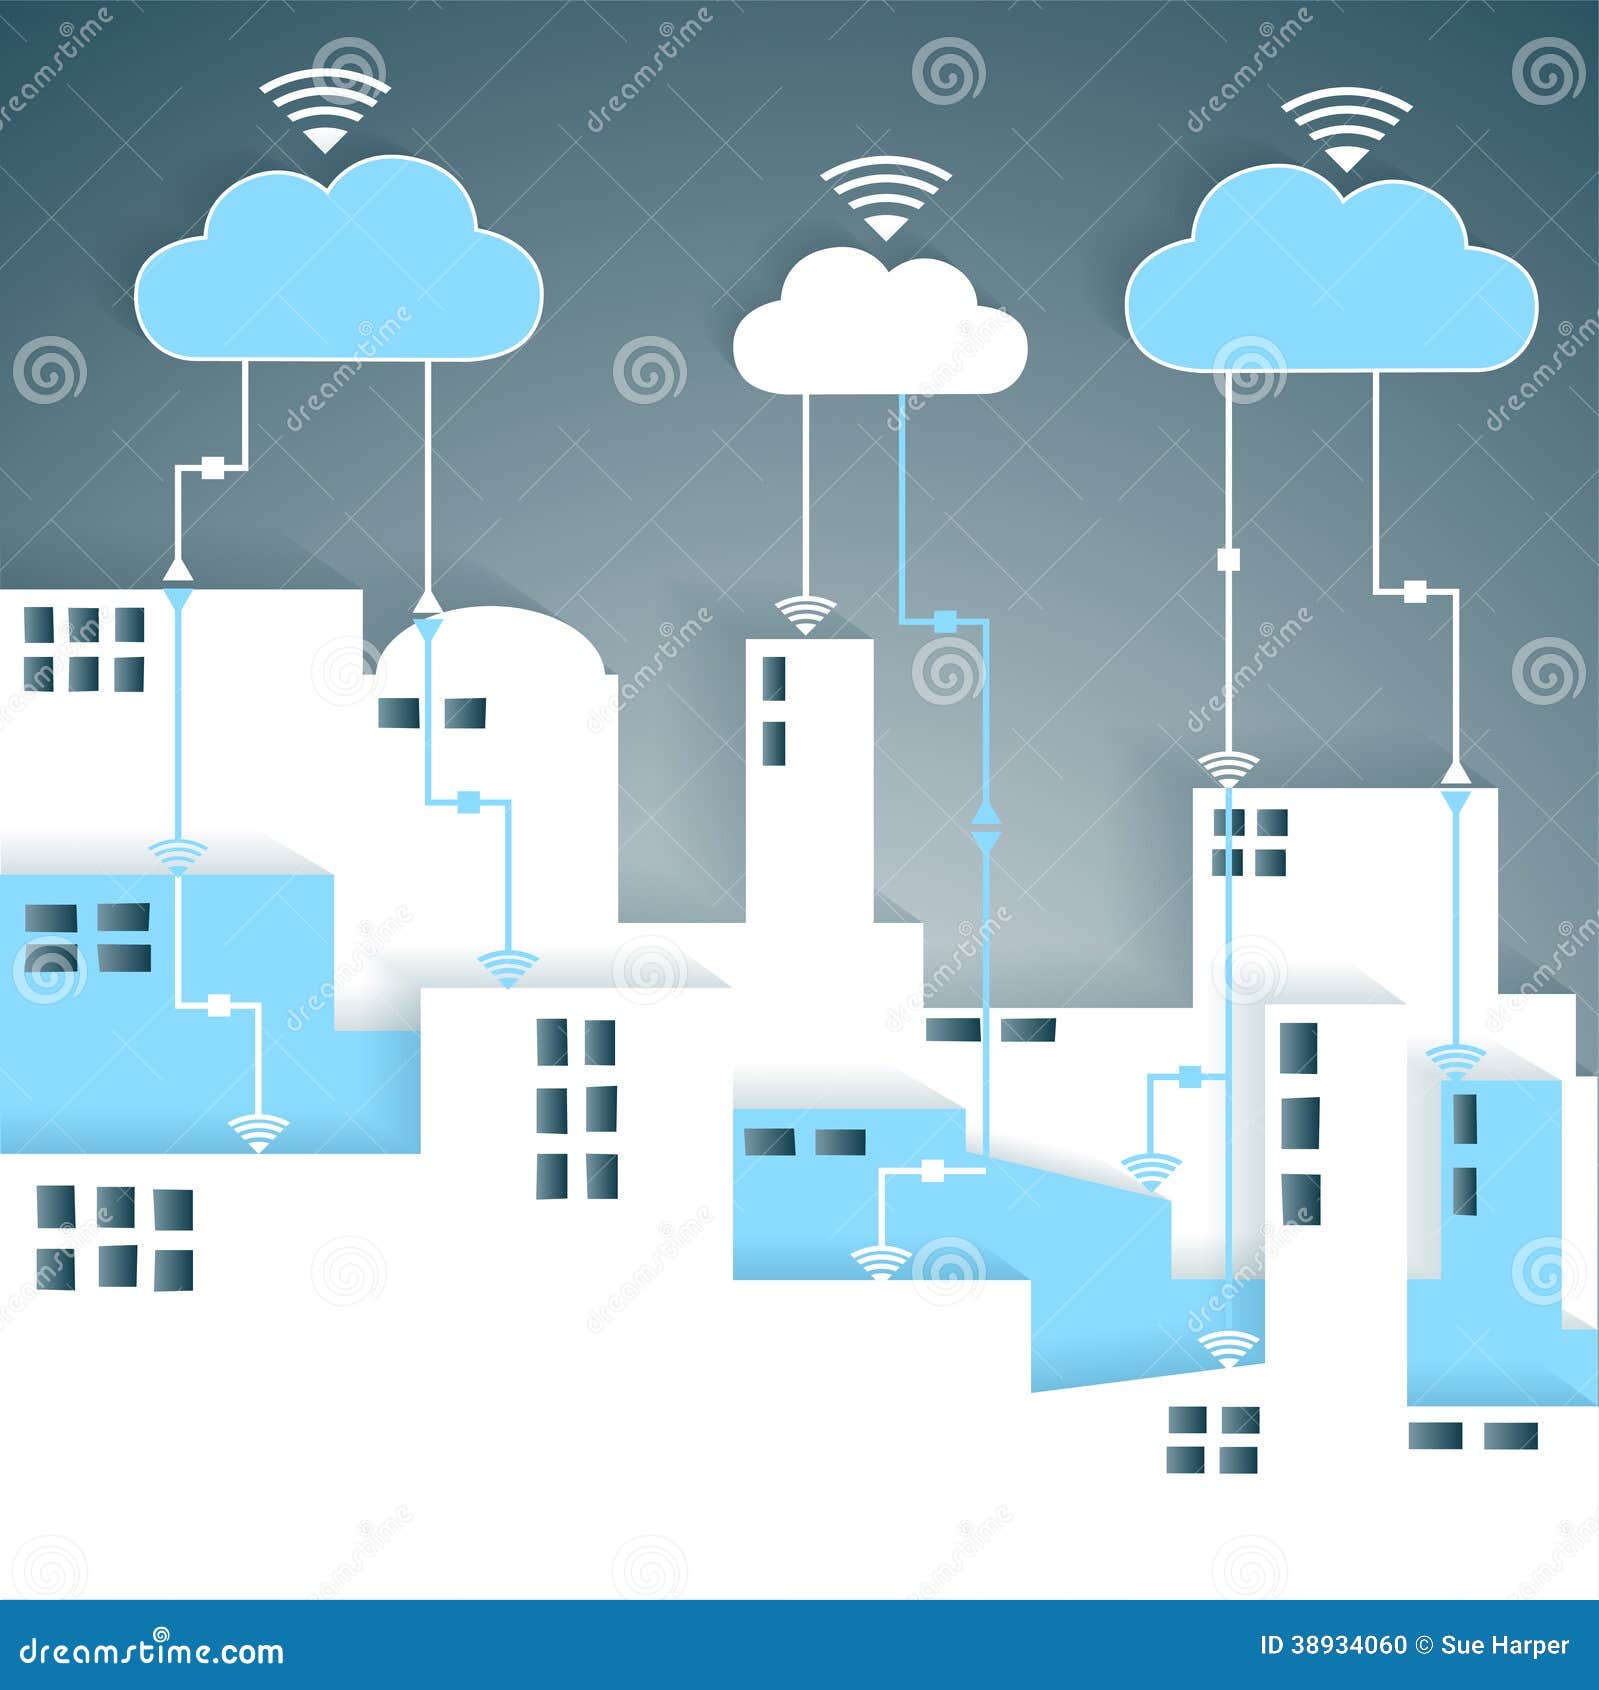 cloud computing connectivity paper cutout city net